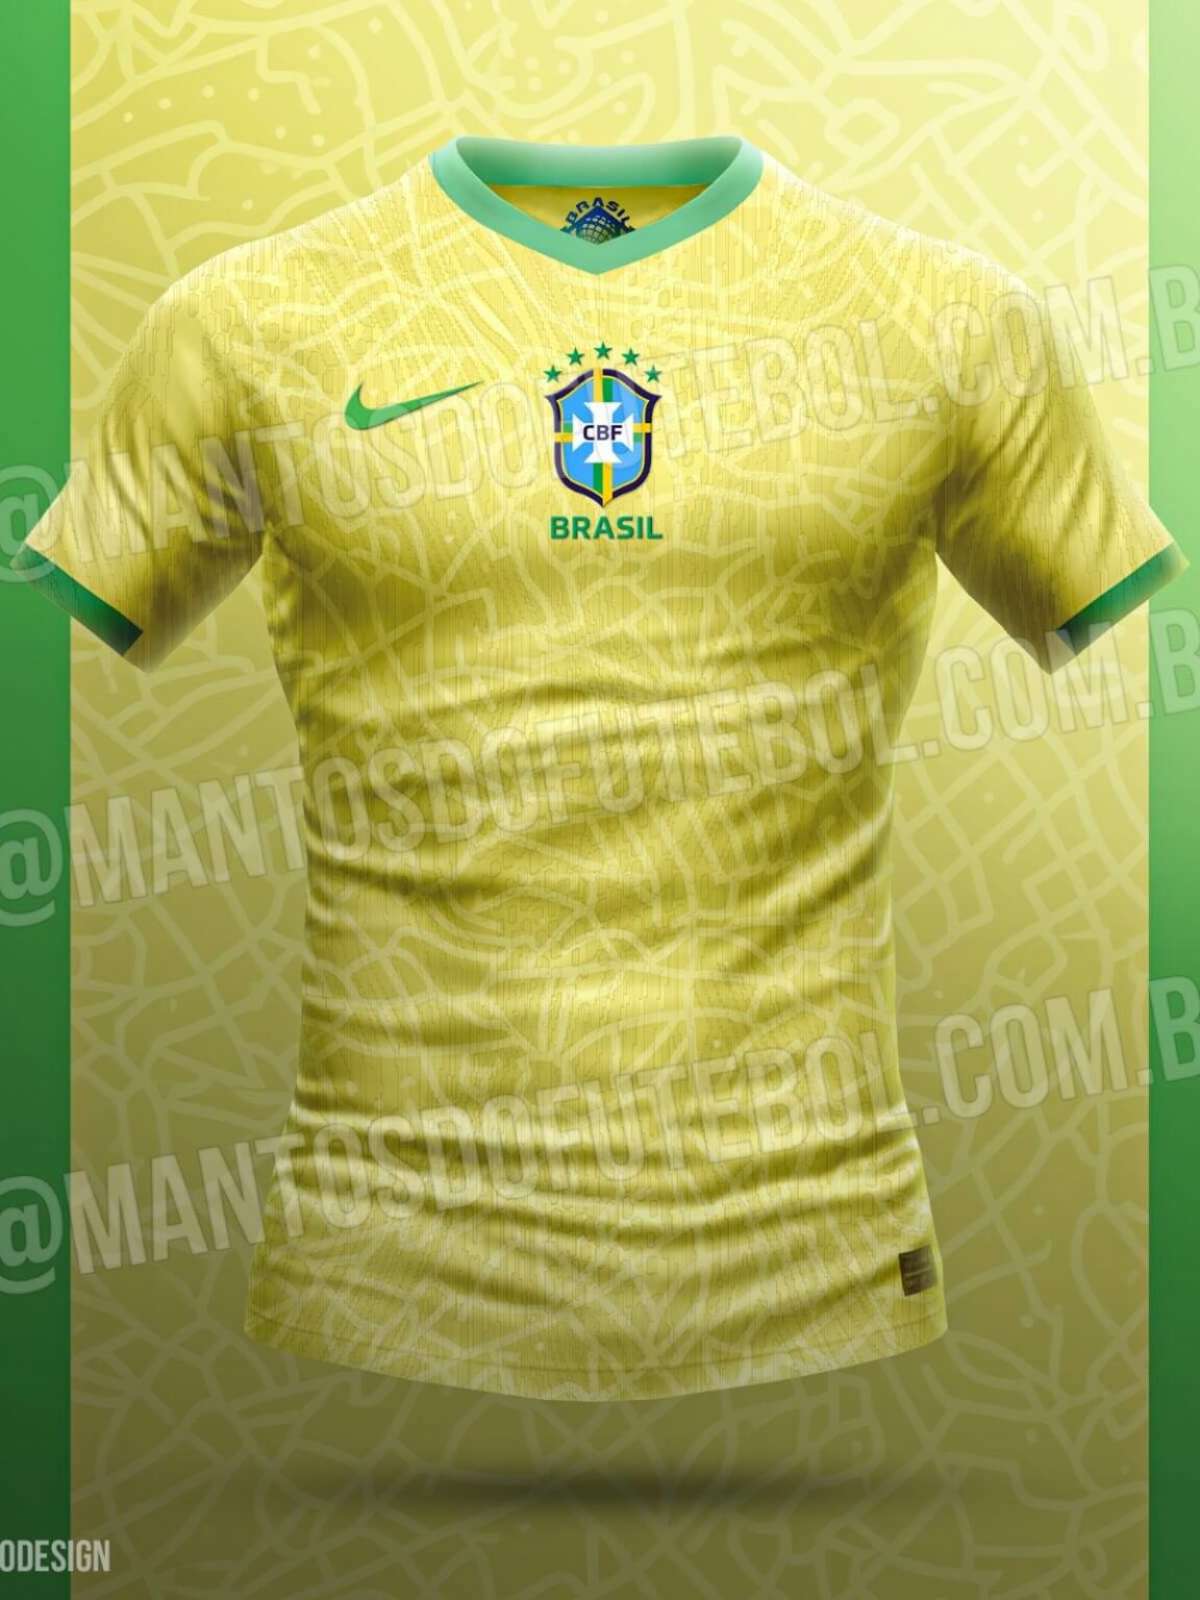 Site publica previsão de nova camisa da Seleção Brasileira para